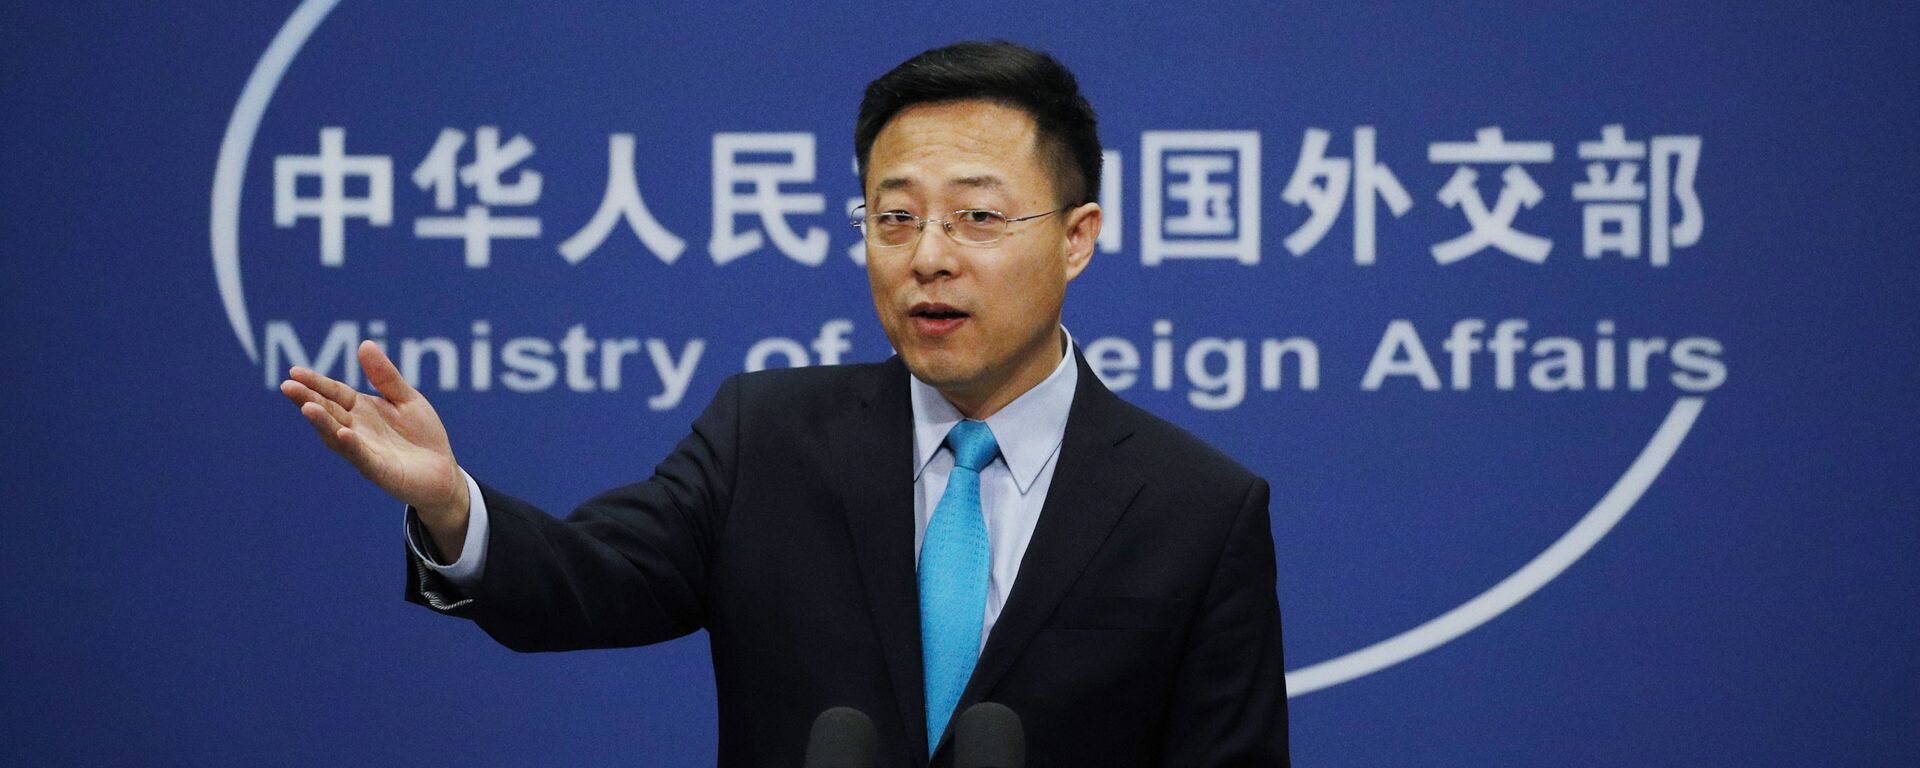 O porta-voz do Ministério das Relações Exteriores da China, Zhao Lijian, gesticula durante uma declaração em Pequim no escritório da Chancelaria chinesa, em 24 de fevereiro de 2020. - Sputnik Brasil, 1920, 28.11.2021